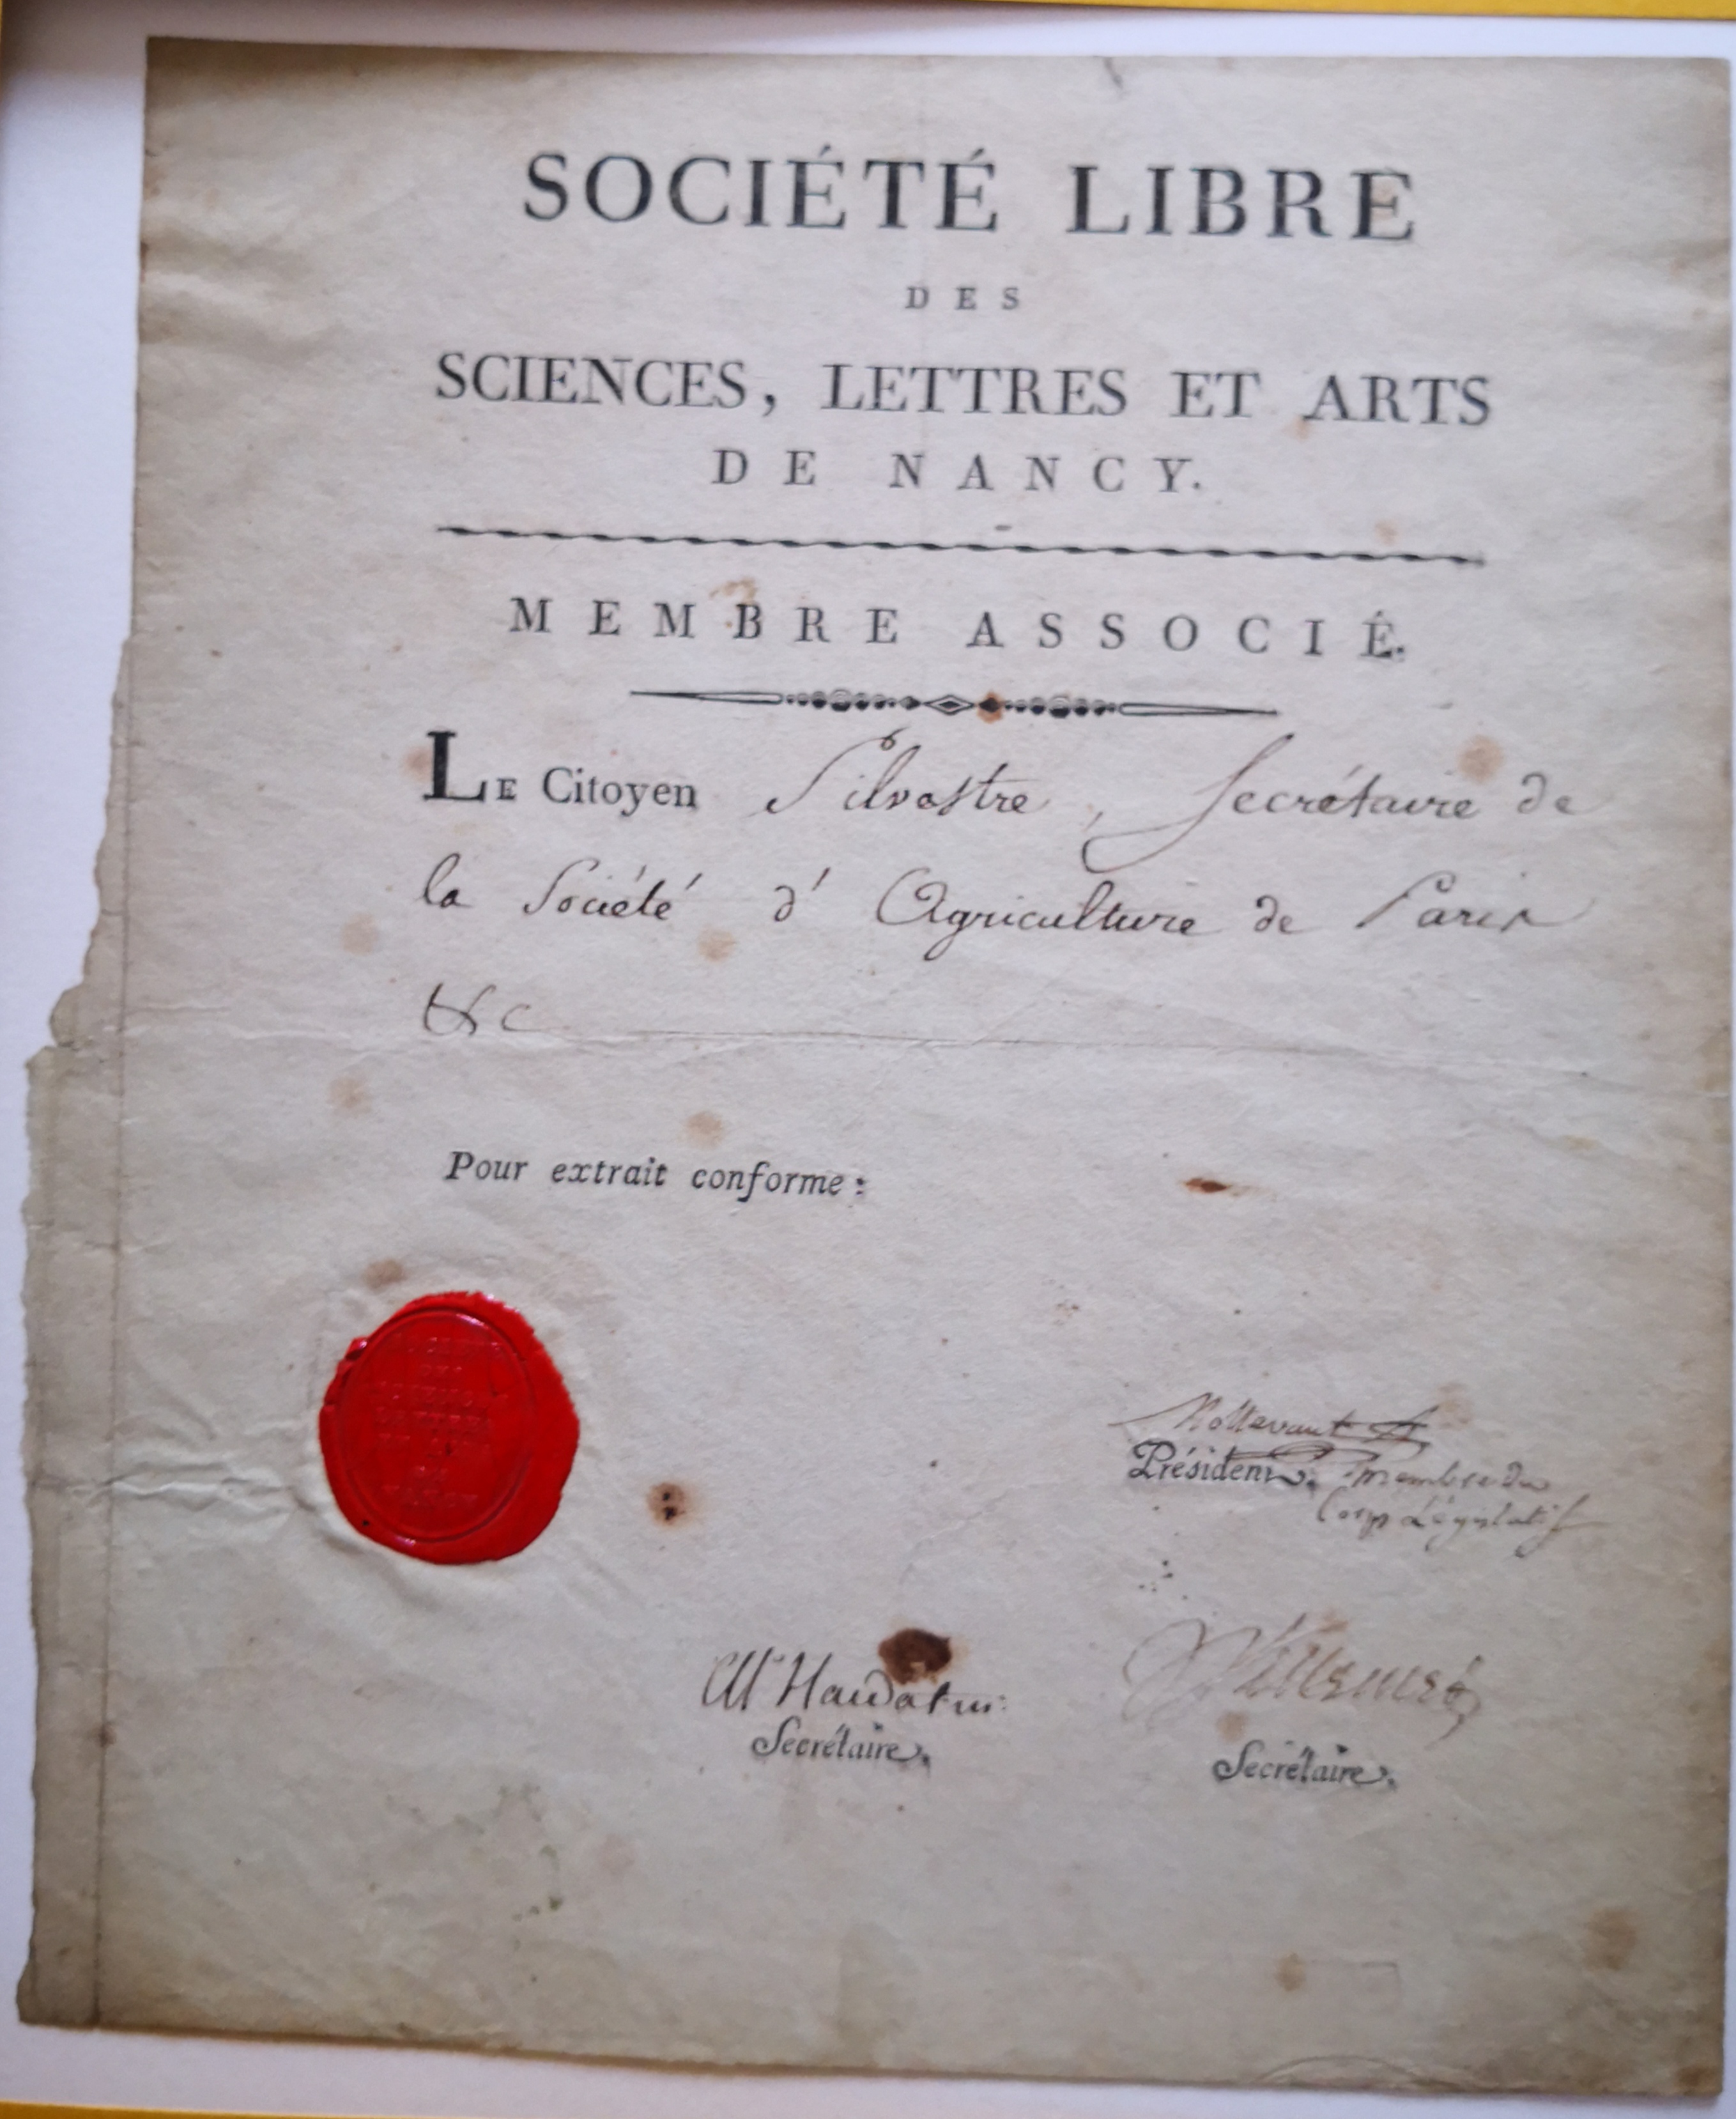  Lettre de membre associé de la Société Libre des Sciences, Lettres et Arts de Nancy pour Augustin-François de Silvestre - Document 1